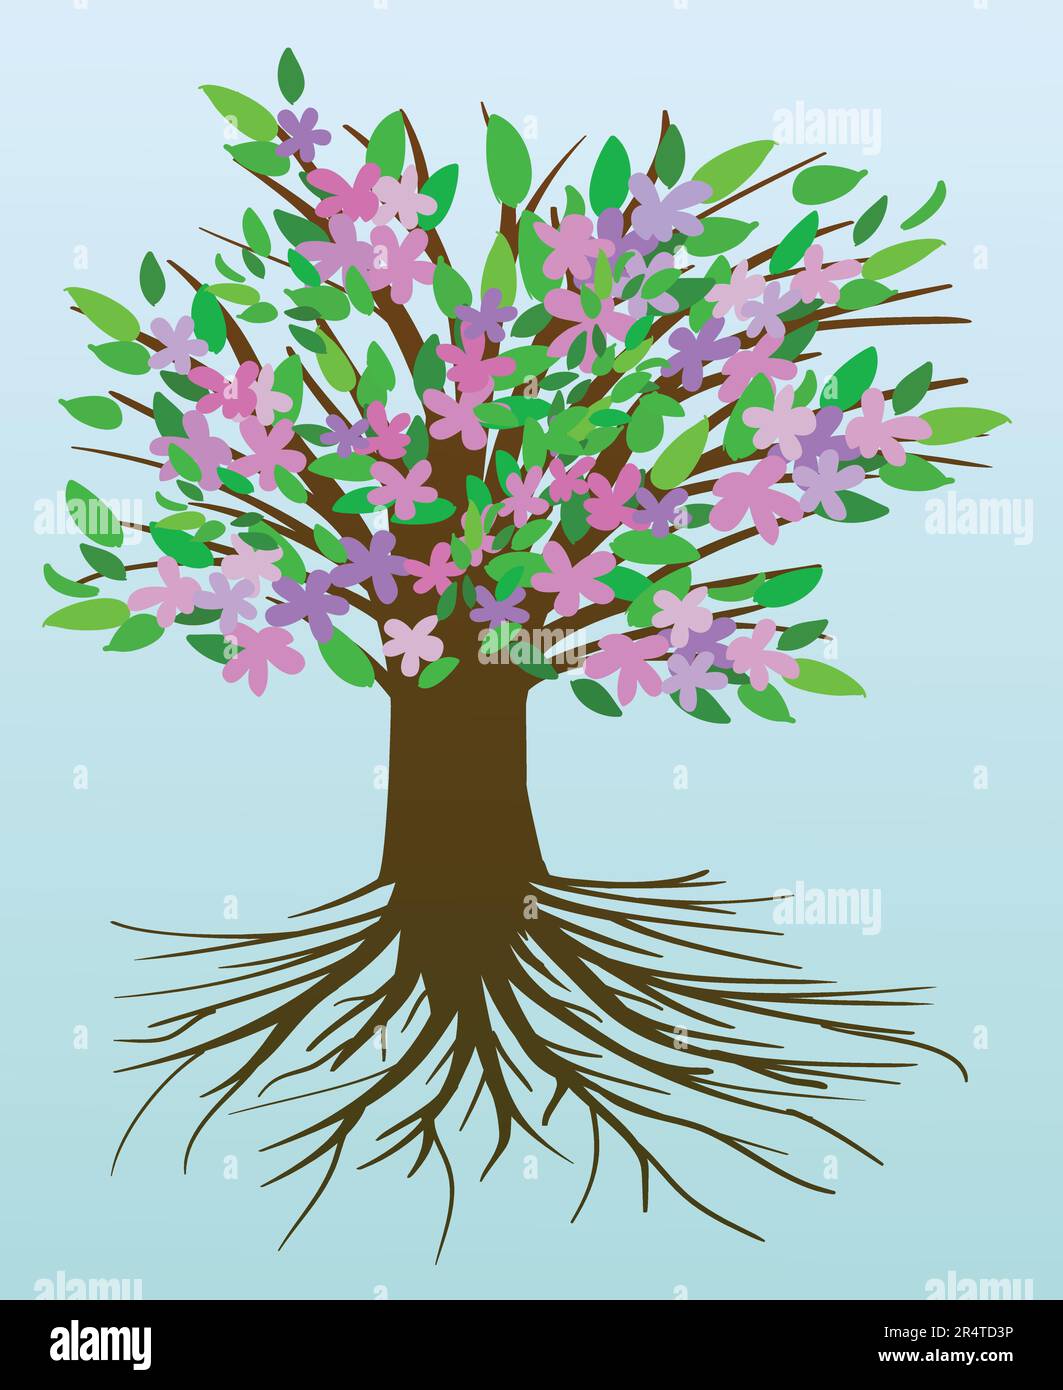 Albero di vita con fiori rosa e viola e foglie verdi. Sfondo sfumato blu chiaro. Illustrazione Vettoriale